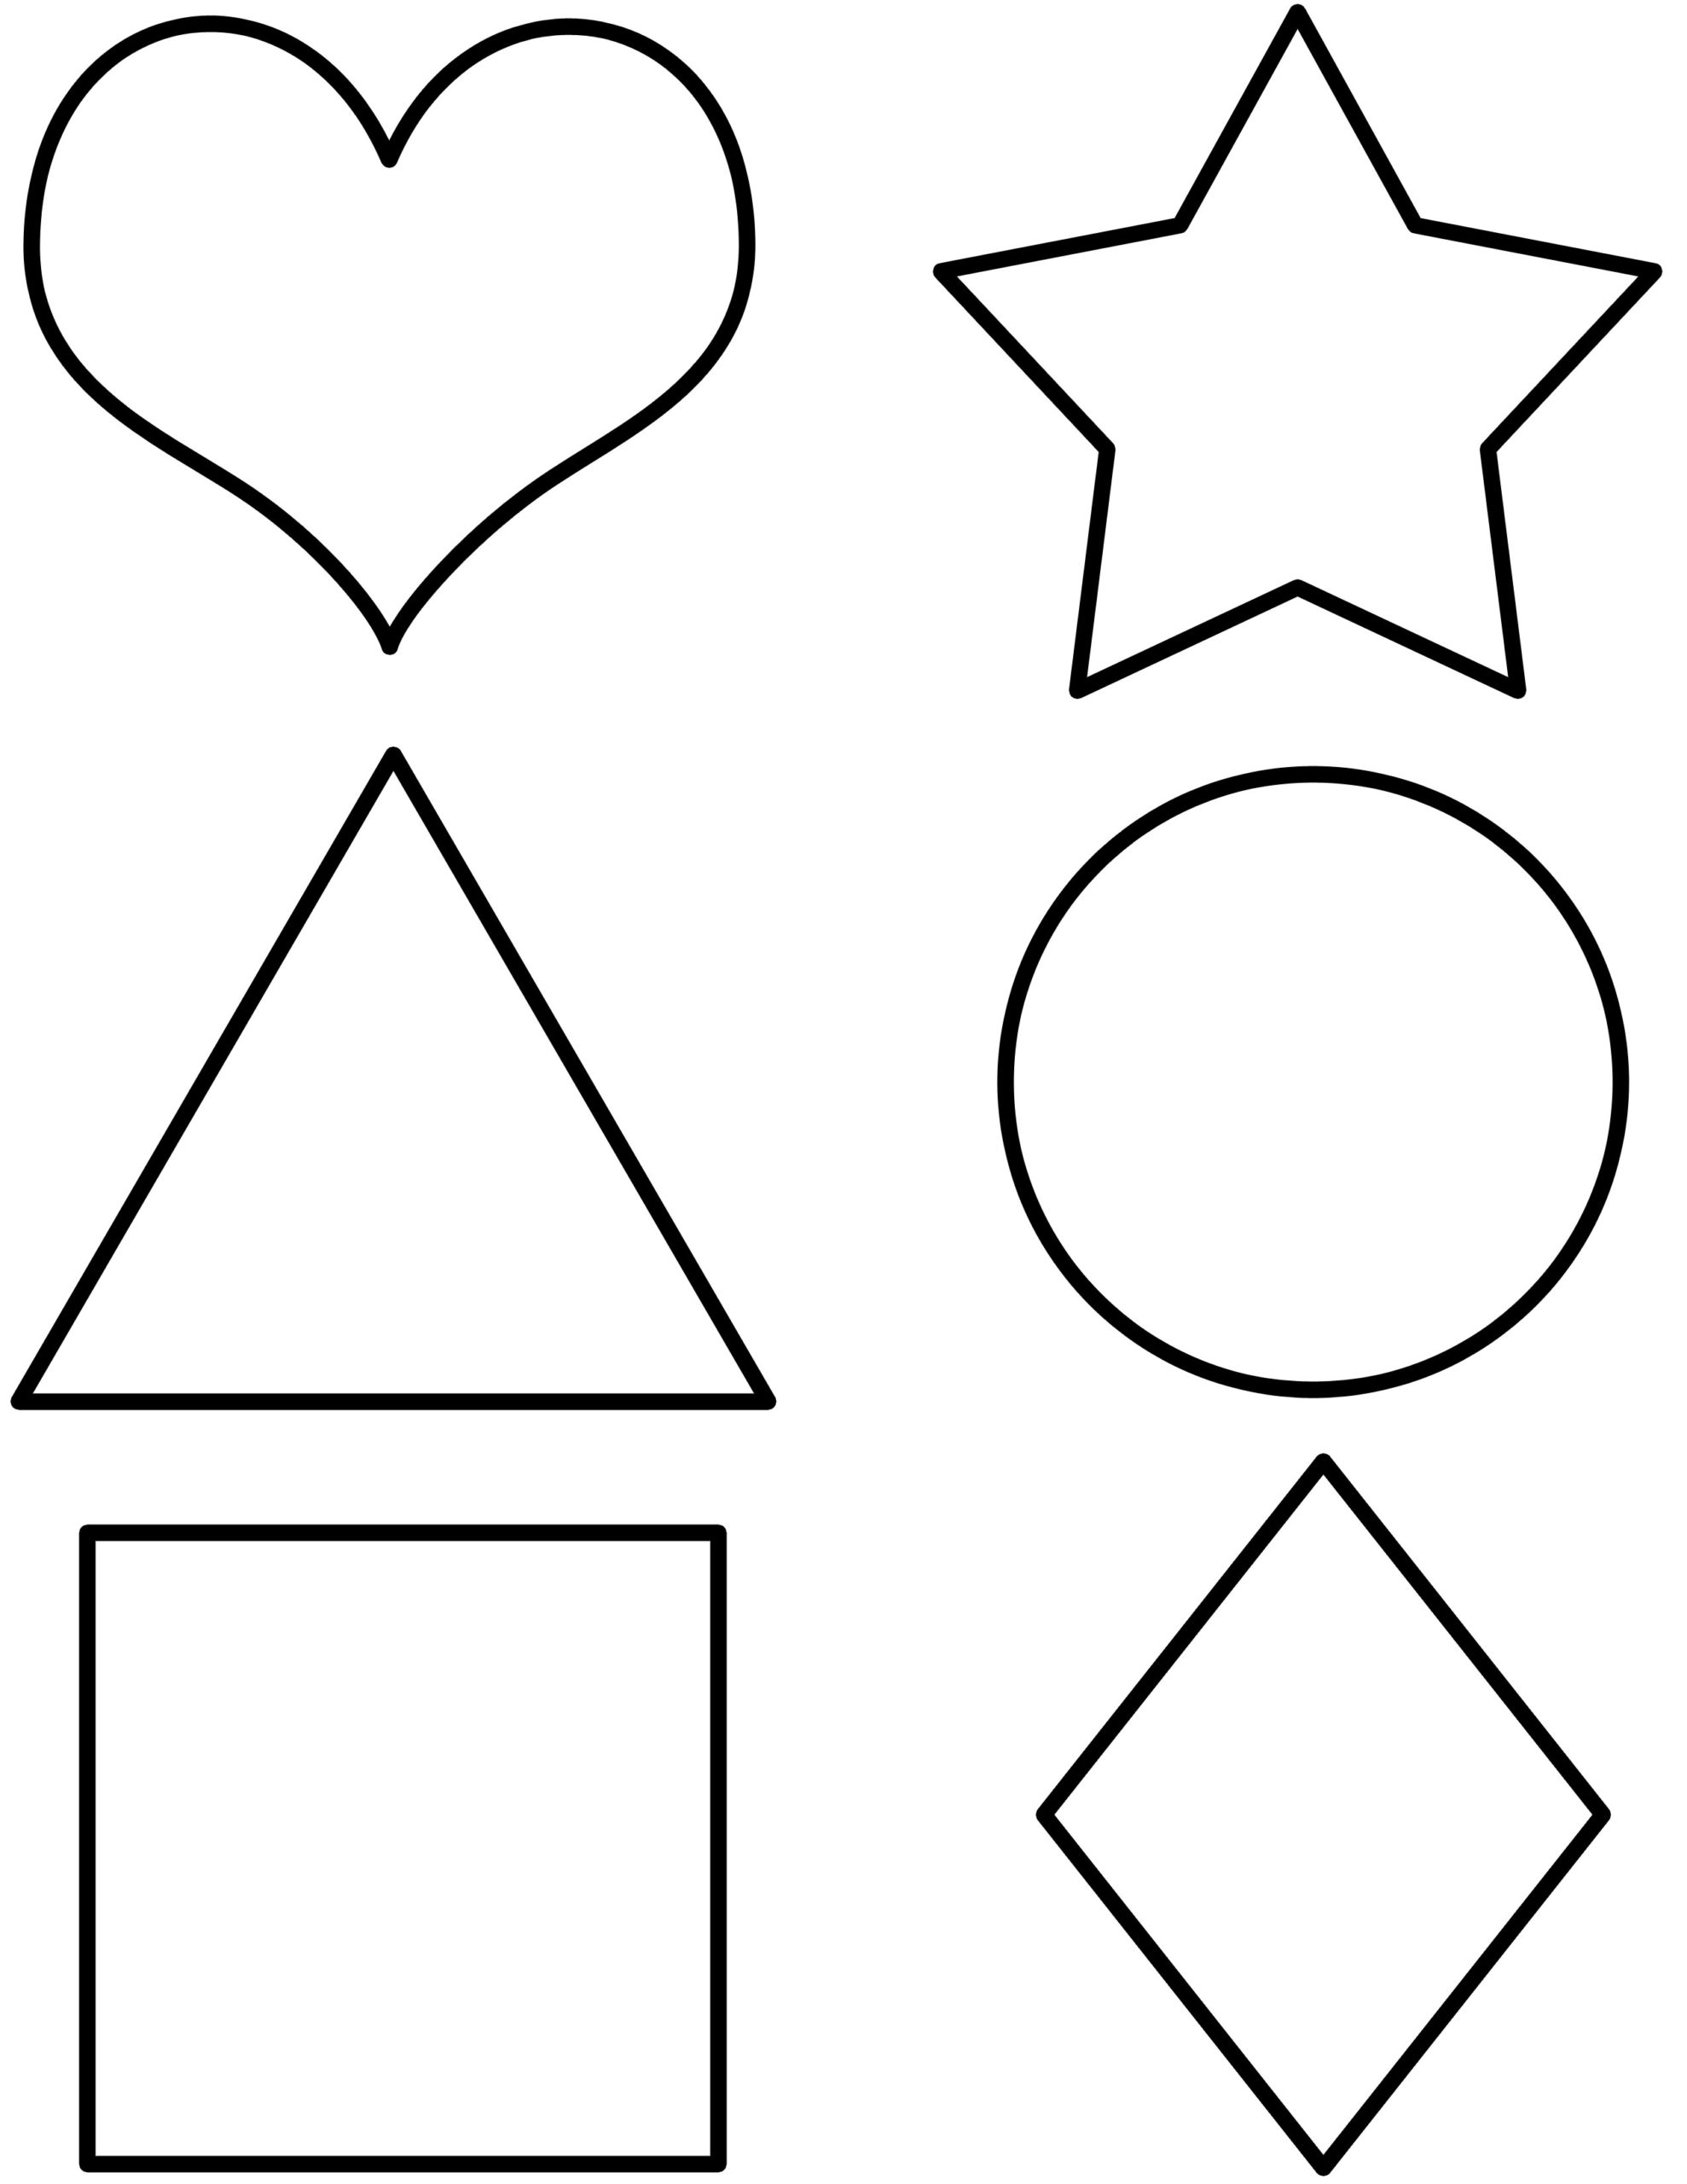 карточки геометрические фигуры для детей картинки распечатать